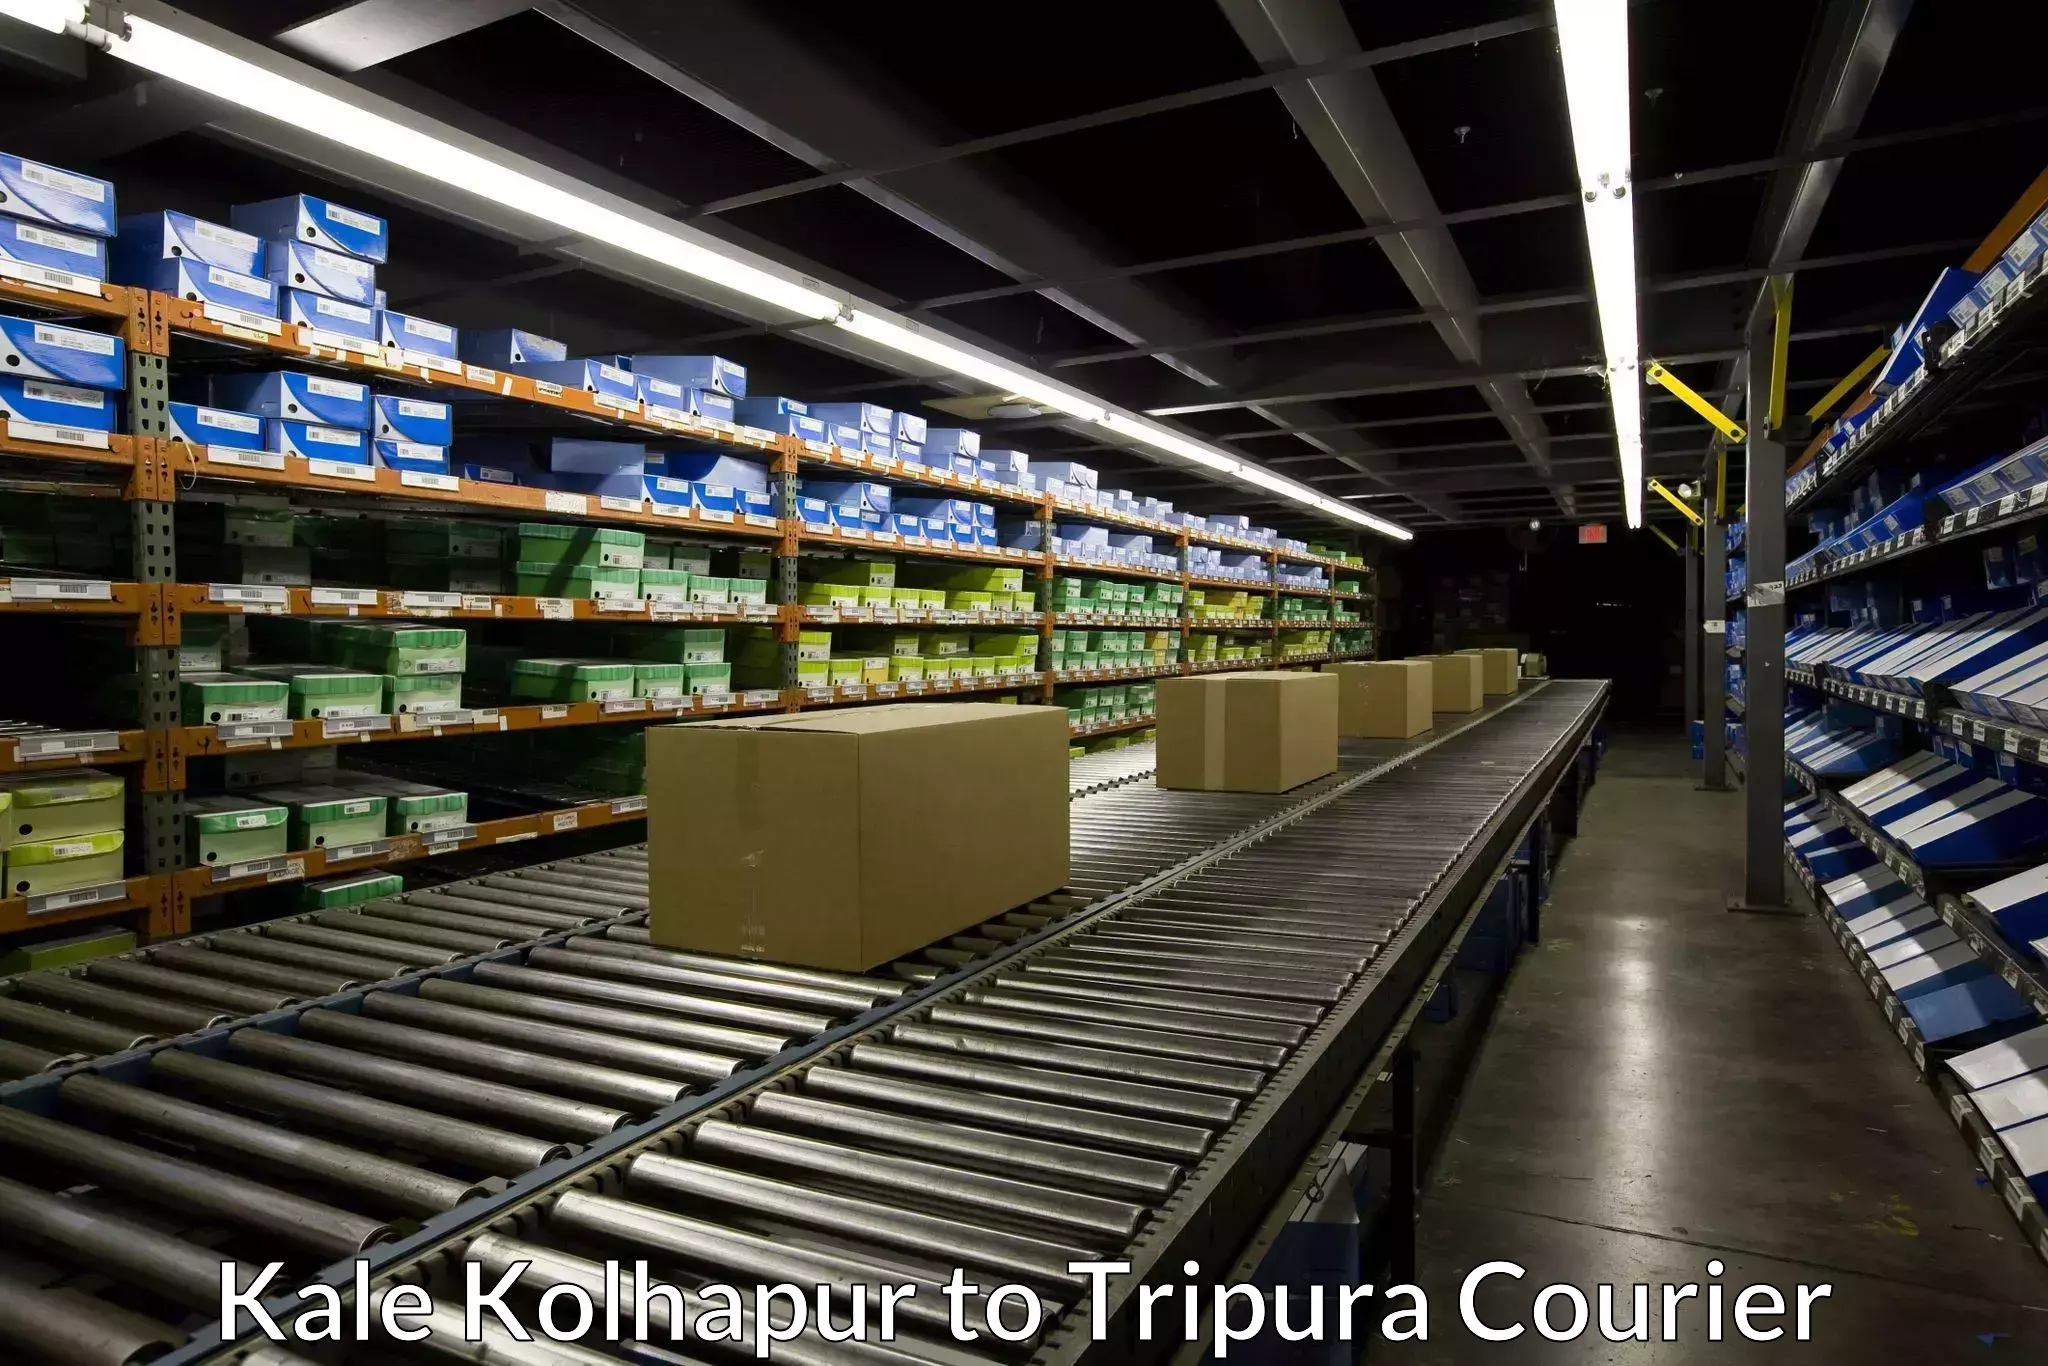 Courier service comparison Kale Kolhapur to Tripura